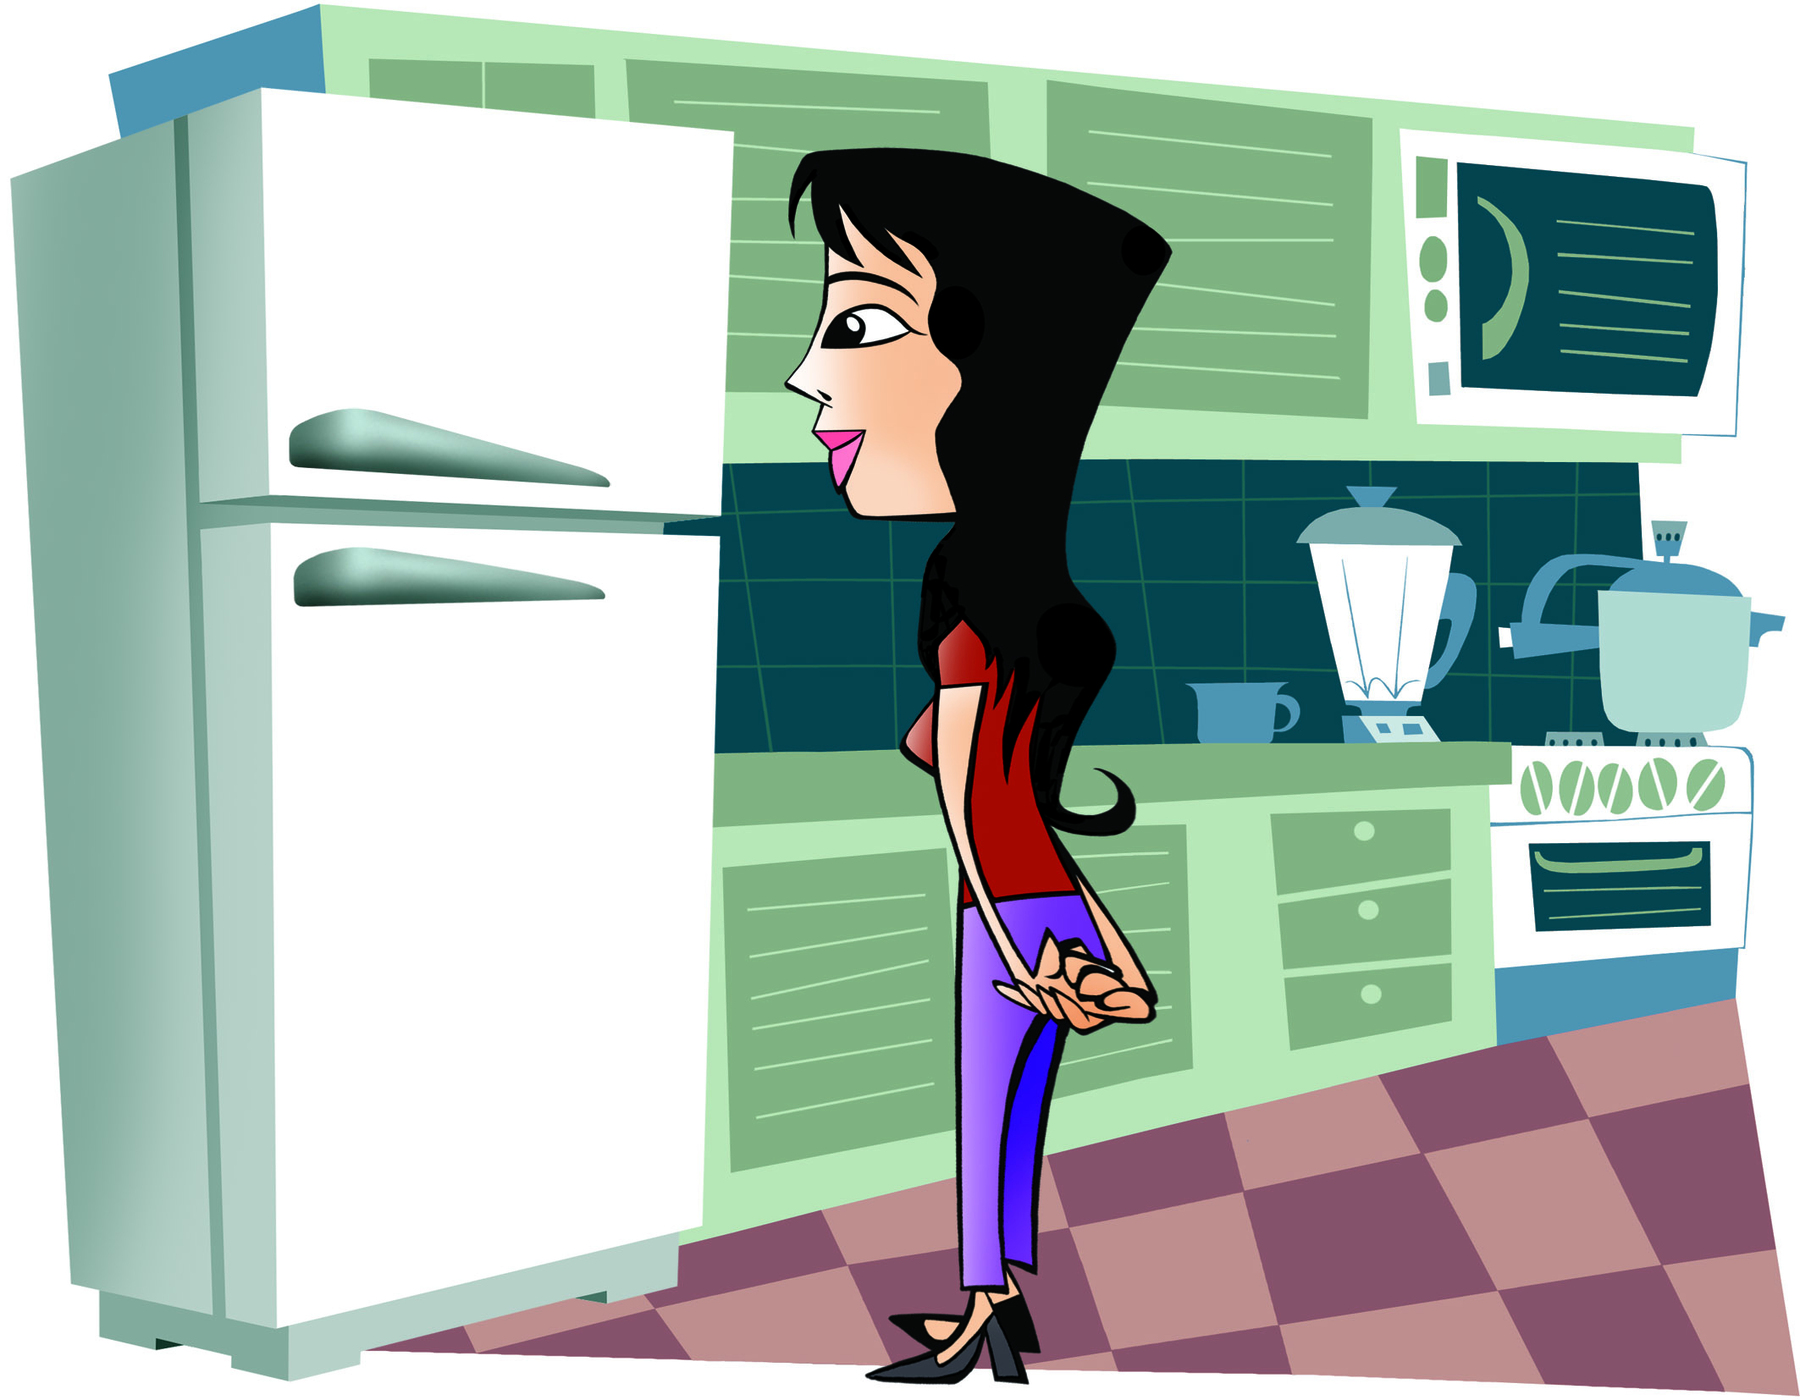 Ilustração. Mulher de cabelo preto, blusa vermelha, sapato preto e calça roxa na frente de uma geladeira branca em uma cozinha.